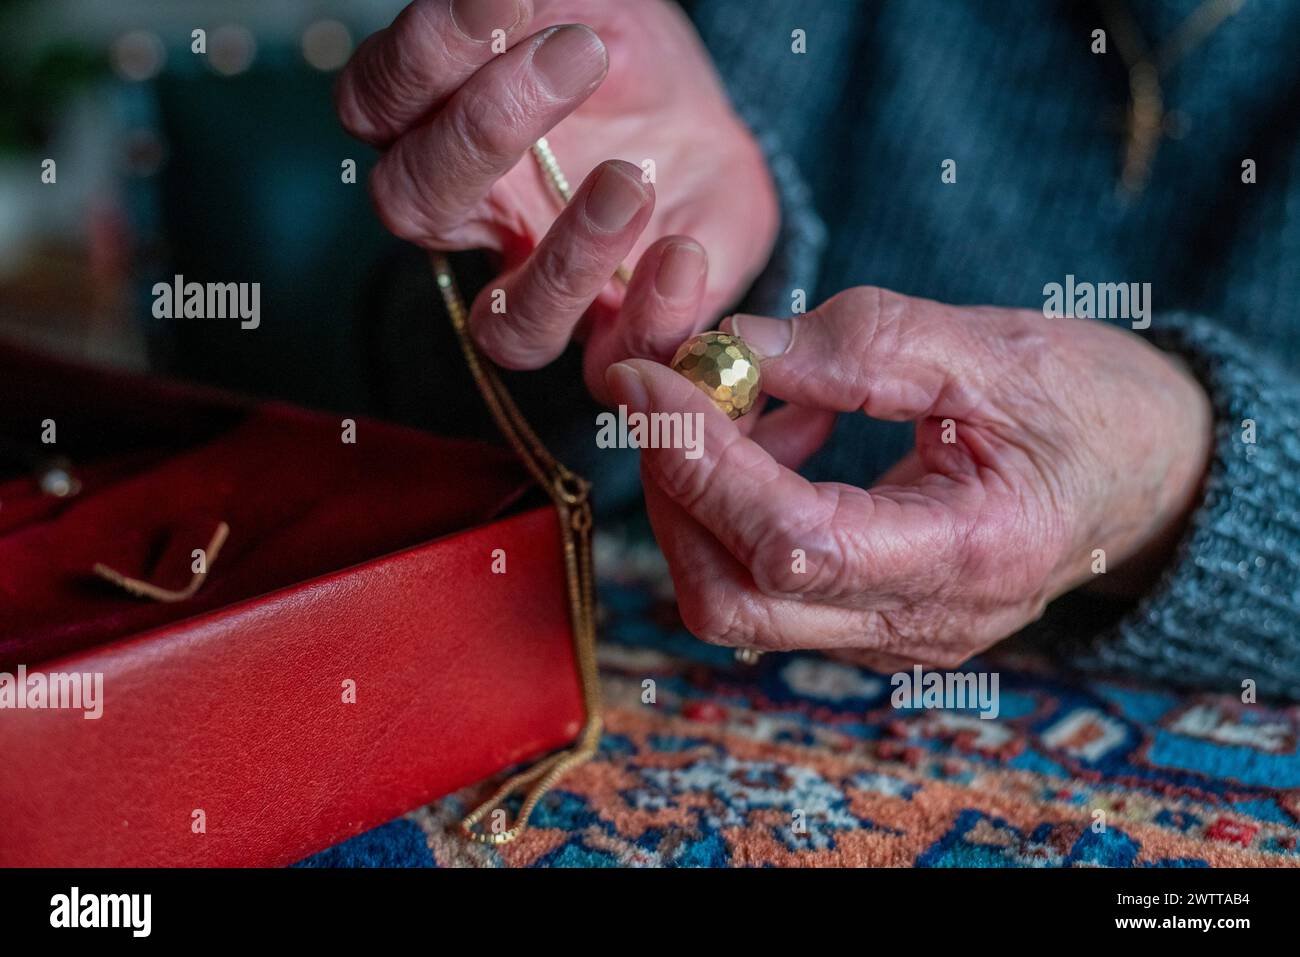 Primo piano delle mani di una persona esaminando con perizia un pezzo di gioiello. Foto Stock